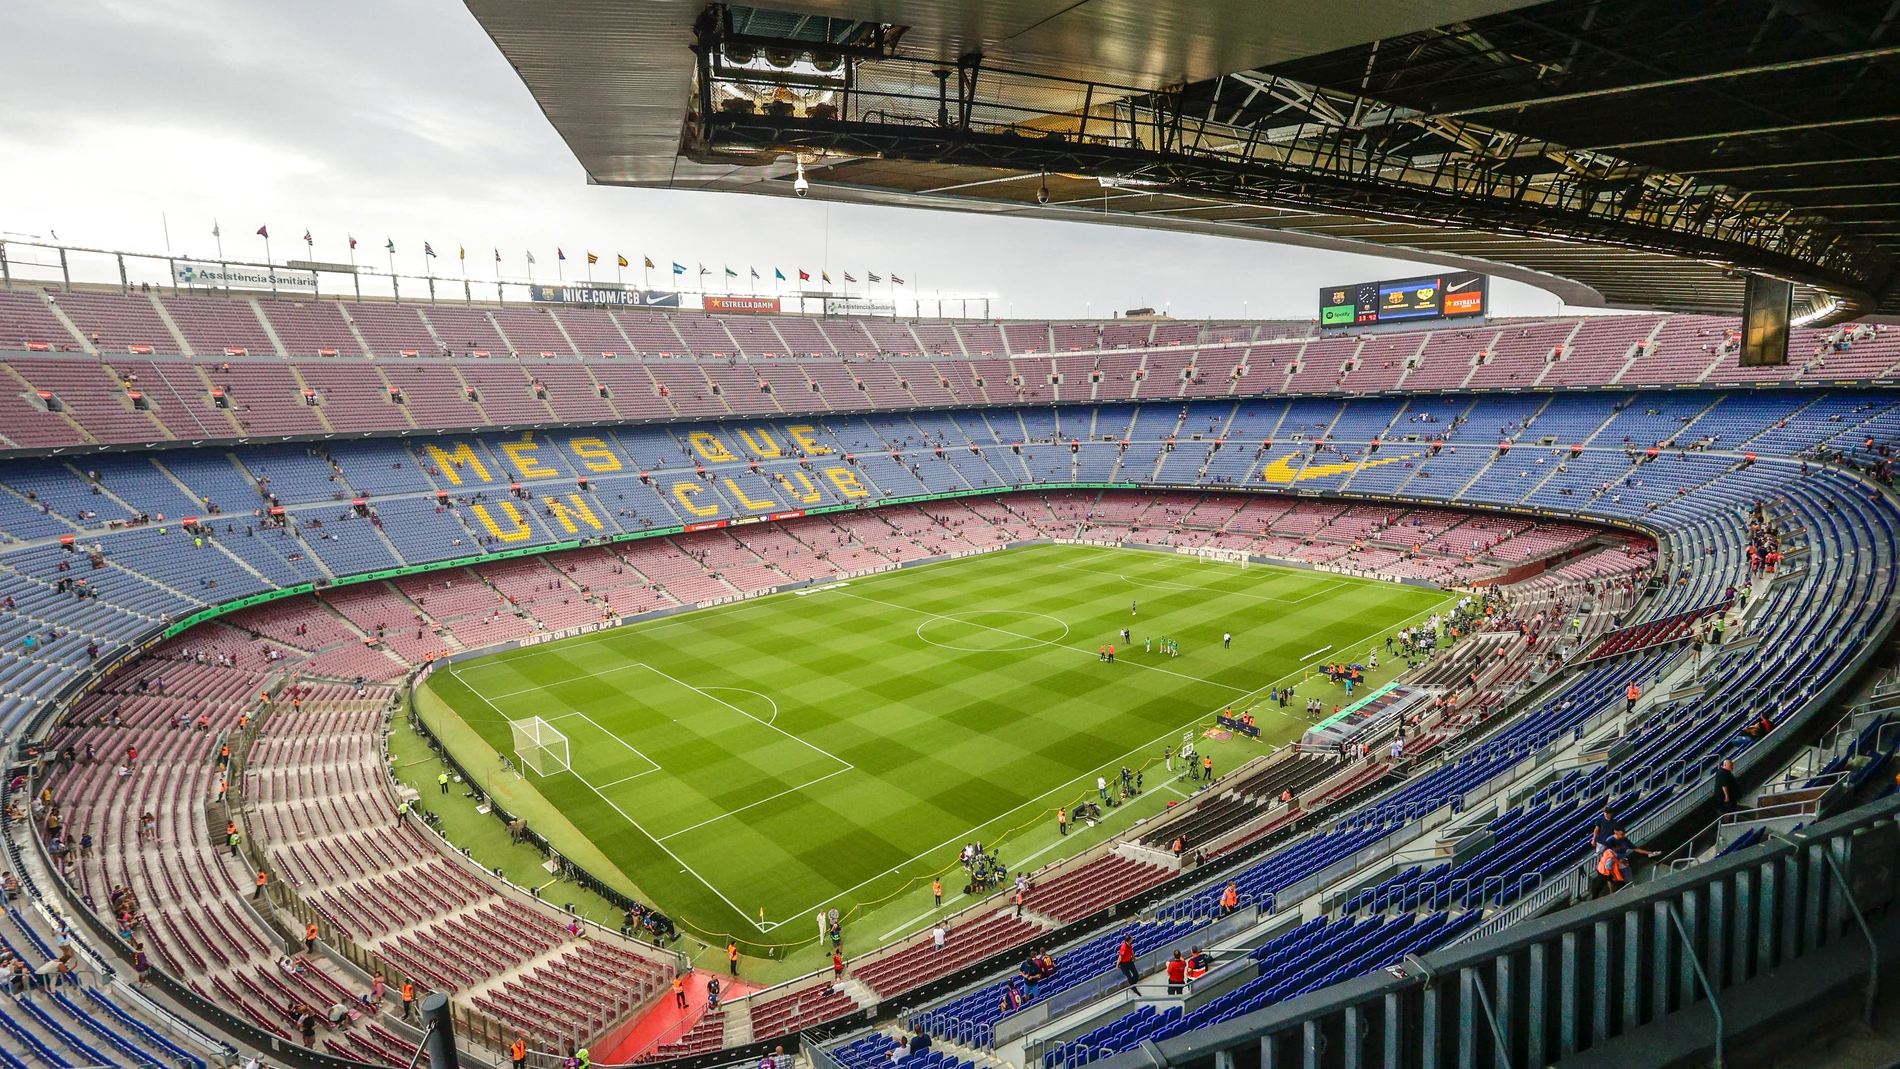 Vista general del Camp Nou